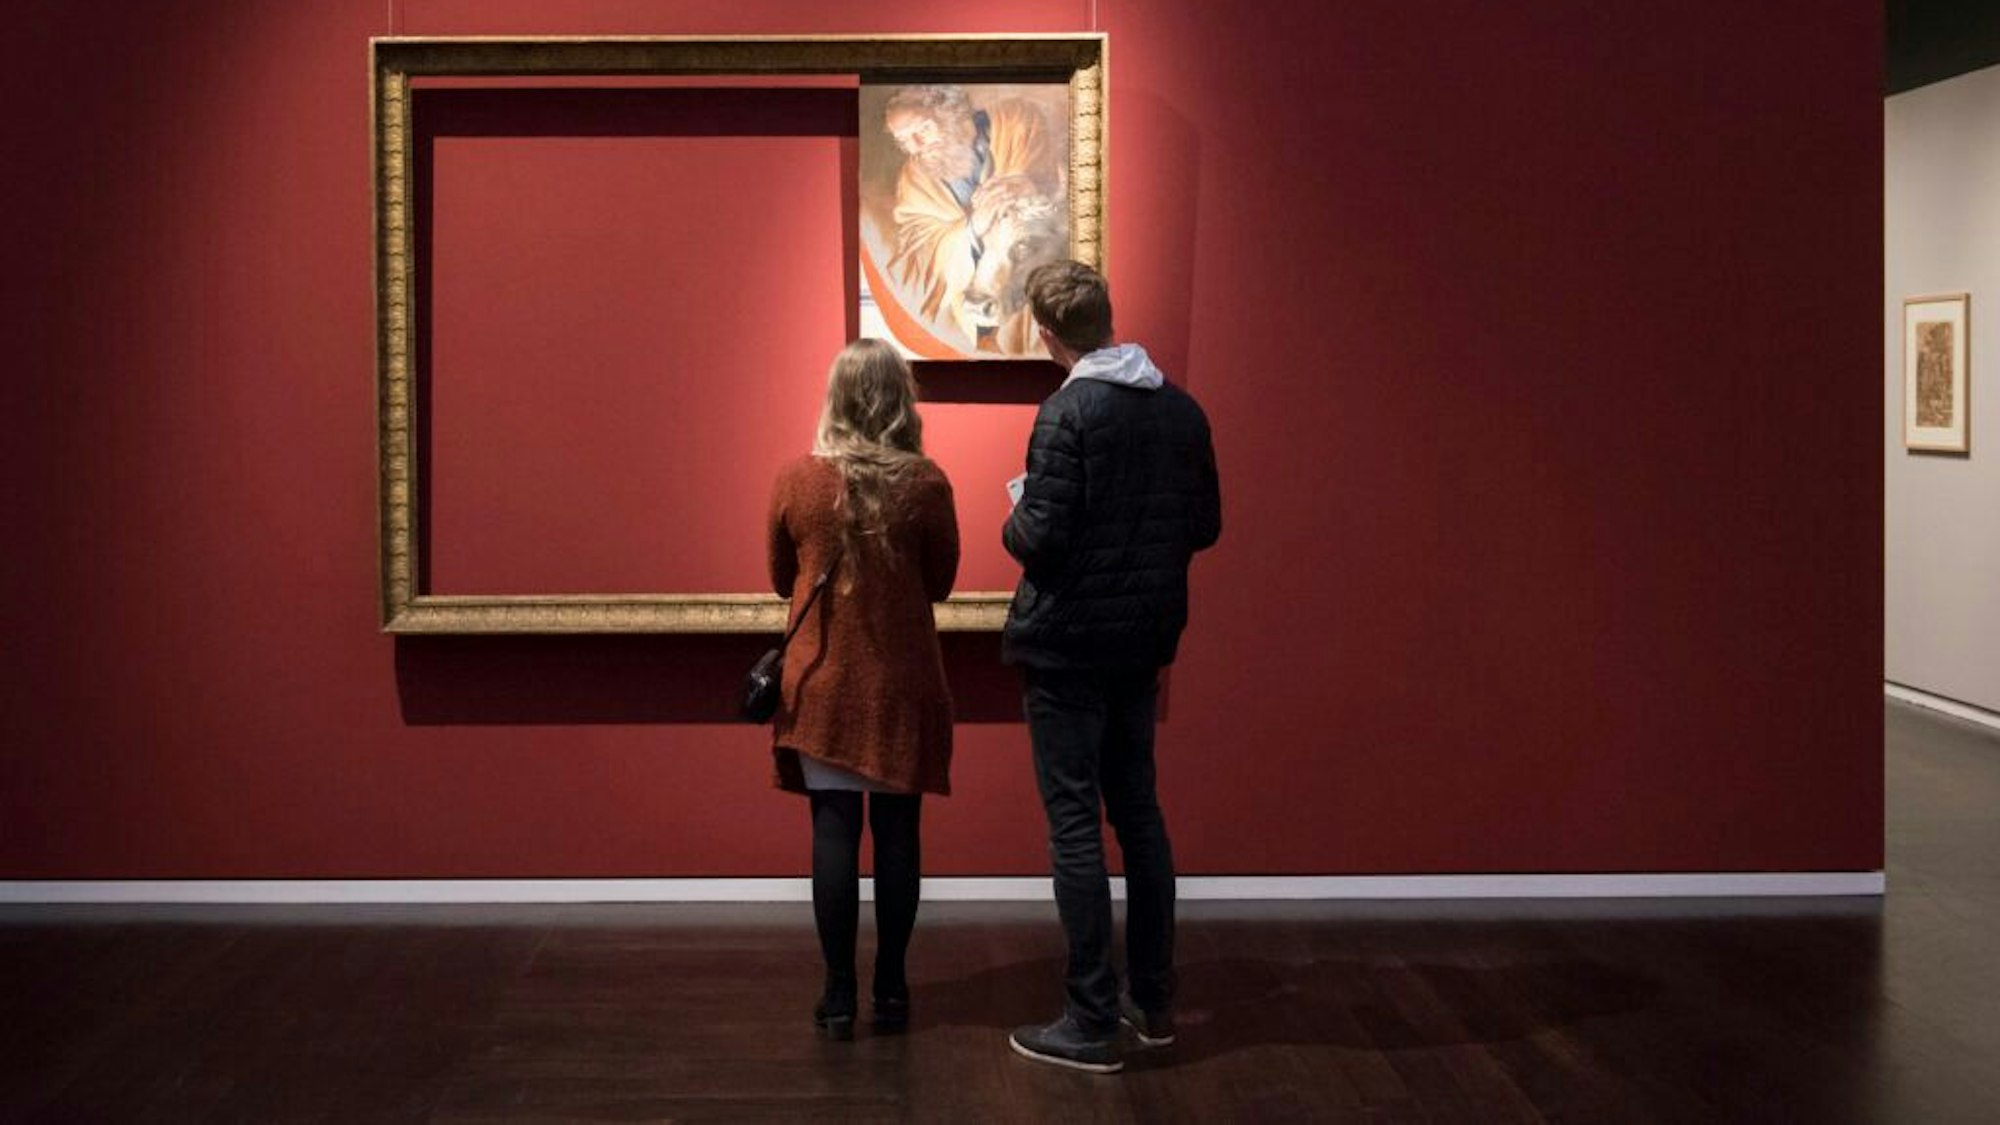 Zwei Menschen stehen vor einem Bild im Museum.

Pressebild für die Museumsnacht Köln

Fotografin: